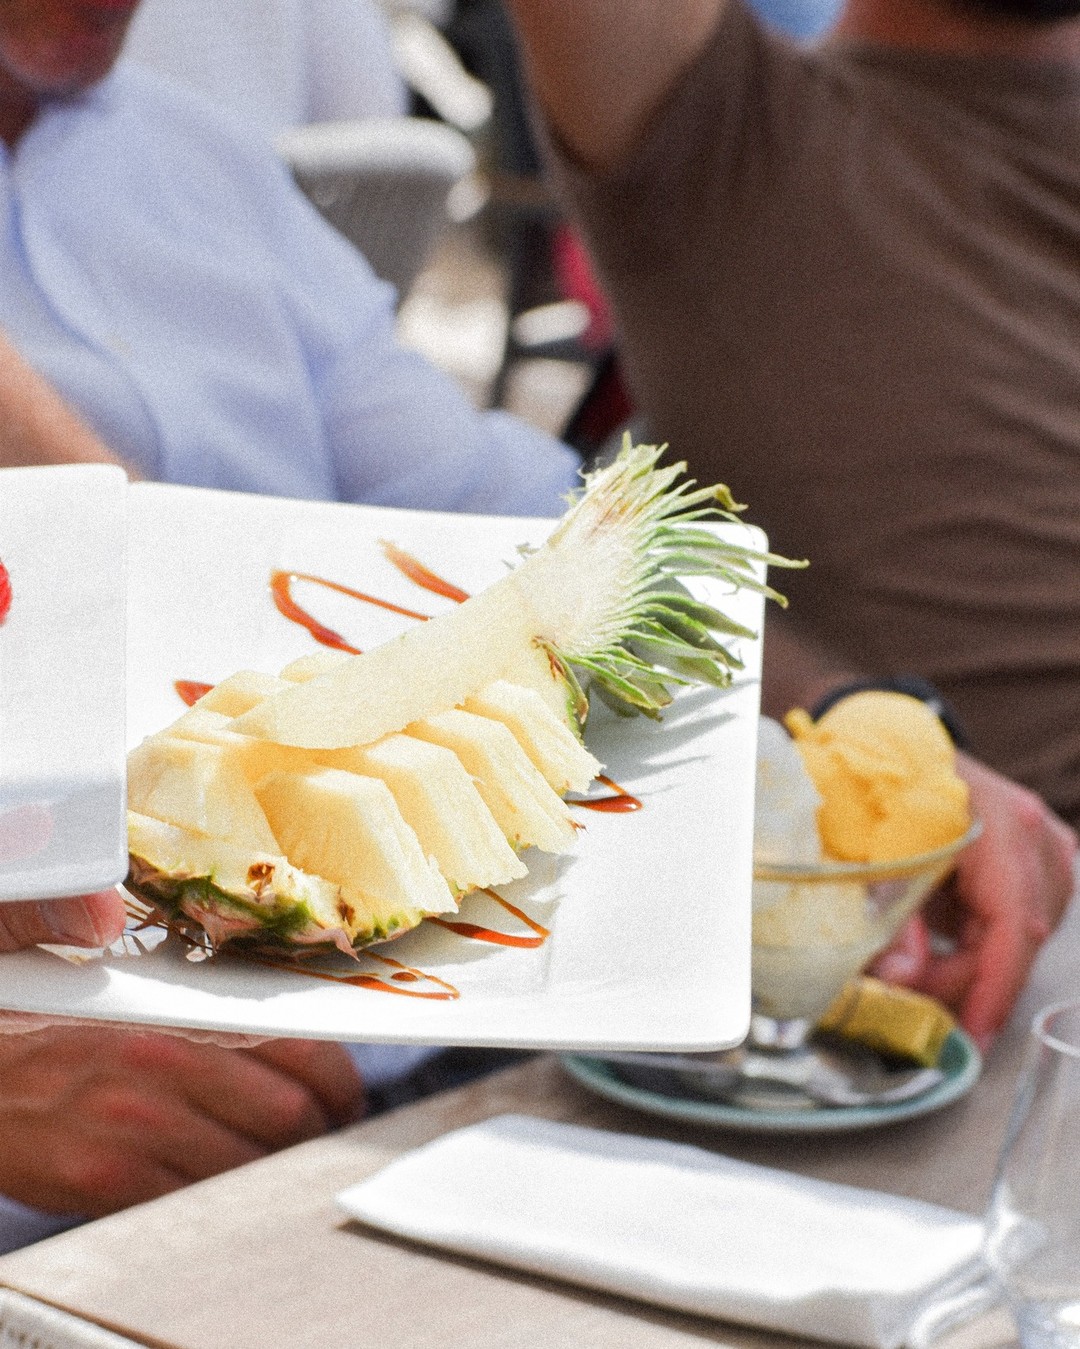 #SummerVibes 🍍 Retrouvez notre carte été dans nos stories à la une ☀️ 
_
Boulevard de la Croisette, Cannes
04.93.43.67.05
www.vegaluna.fr  #food #restaurant #cannes #plage #frenchriviera #fruits